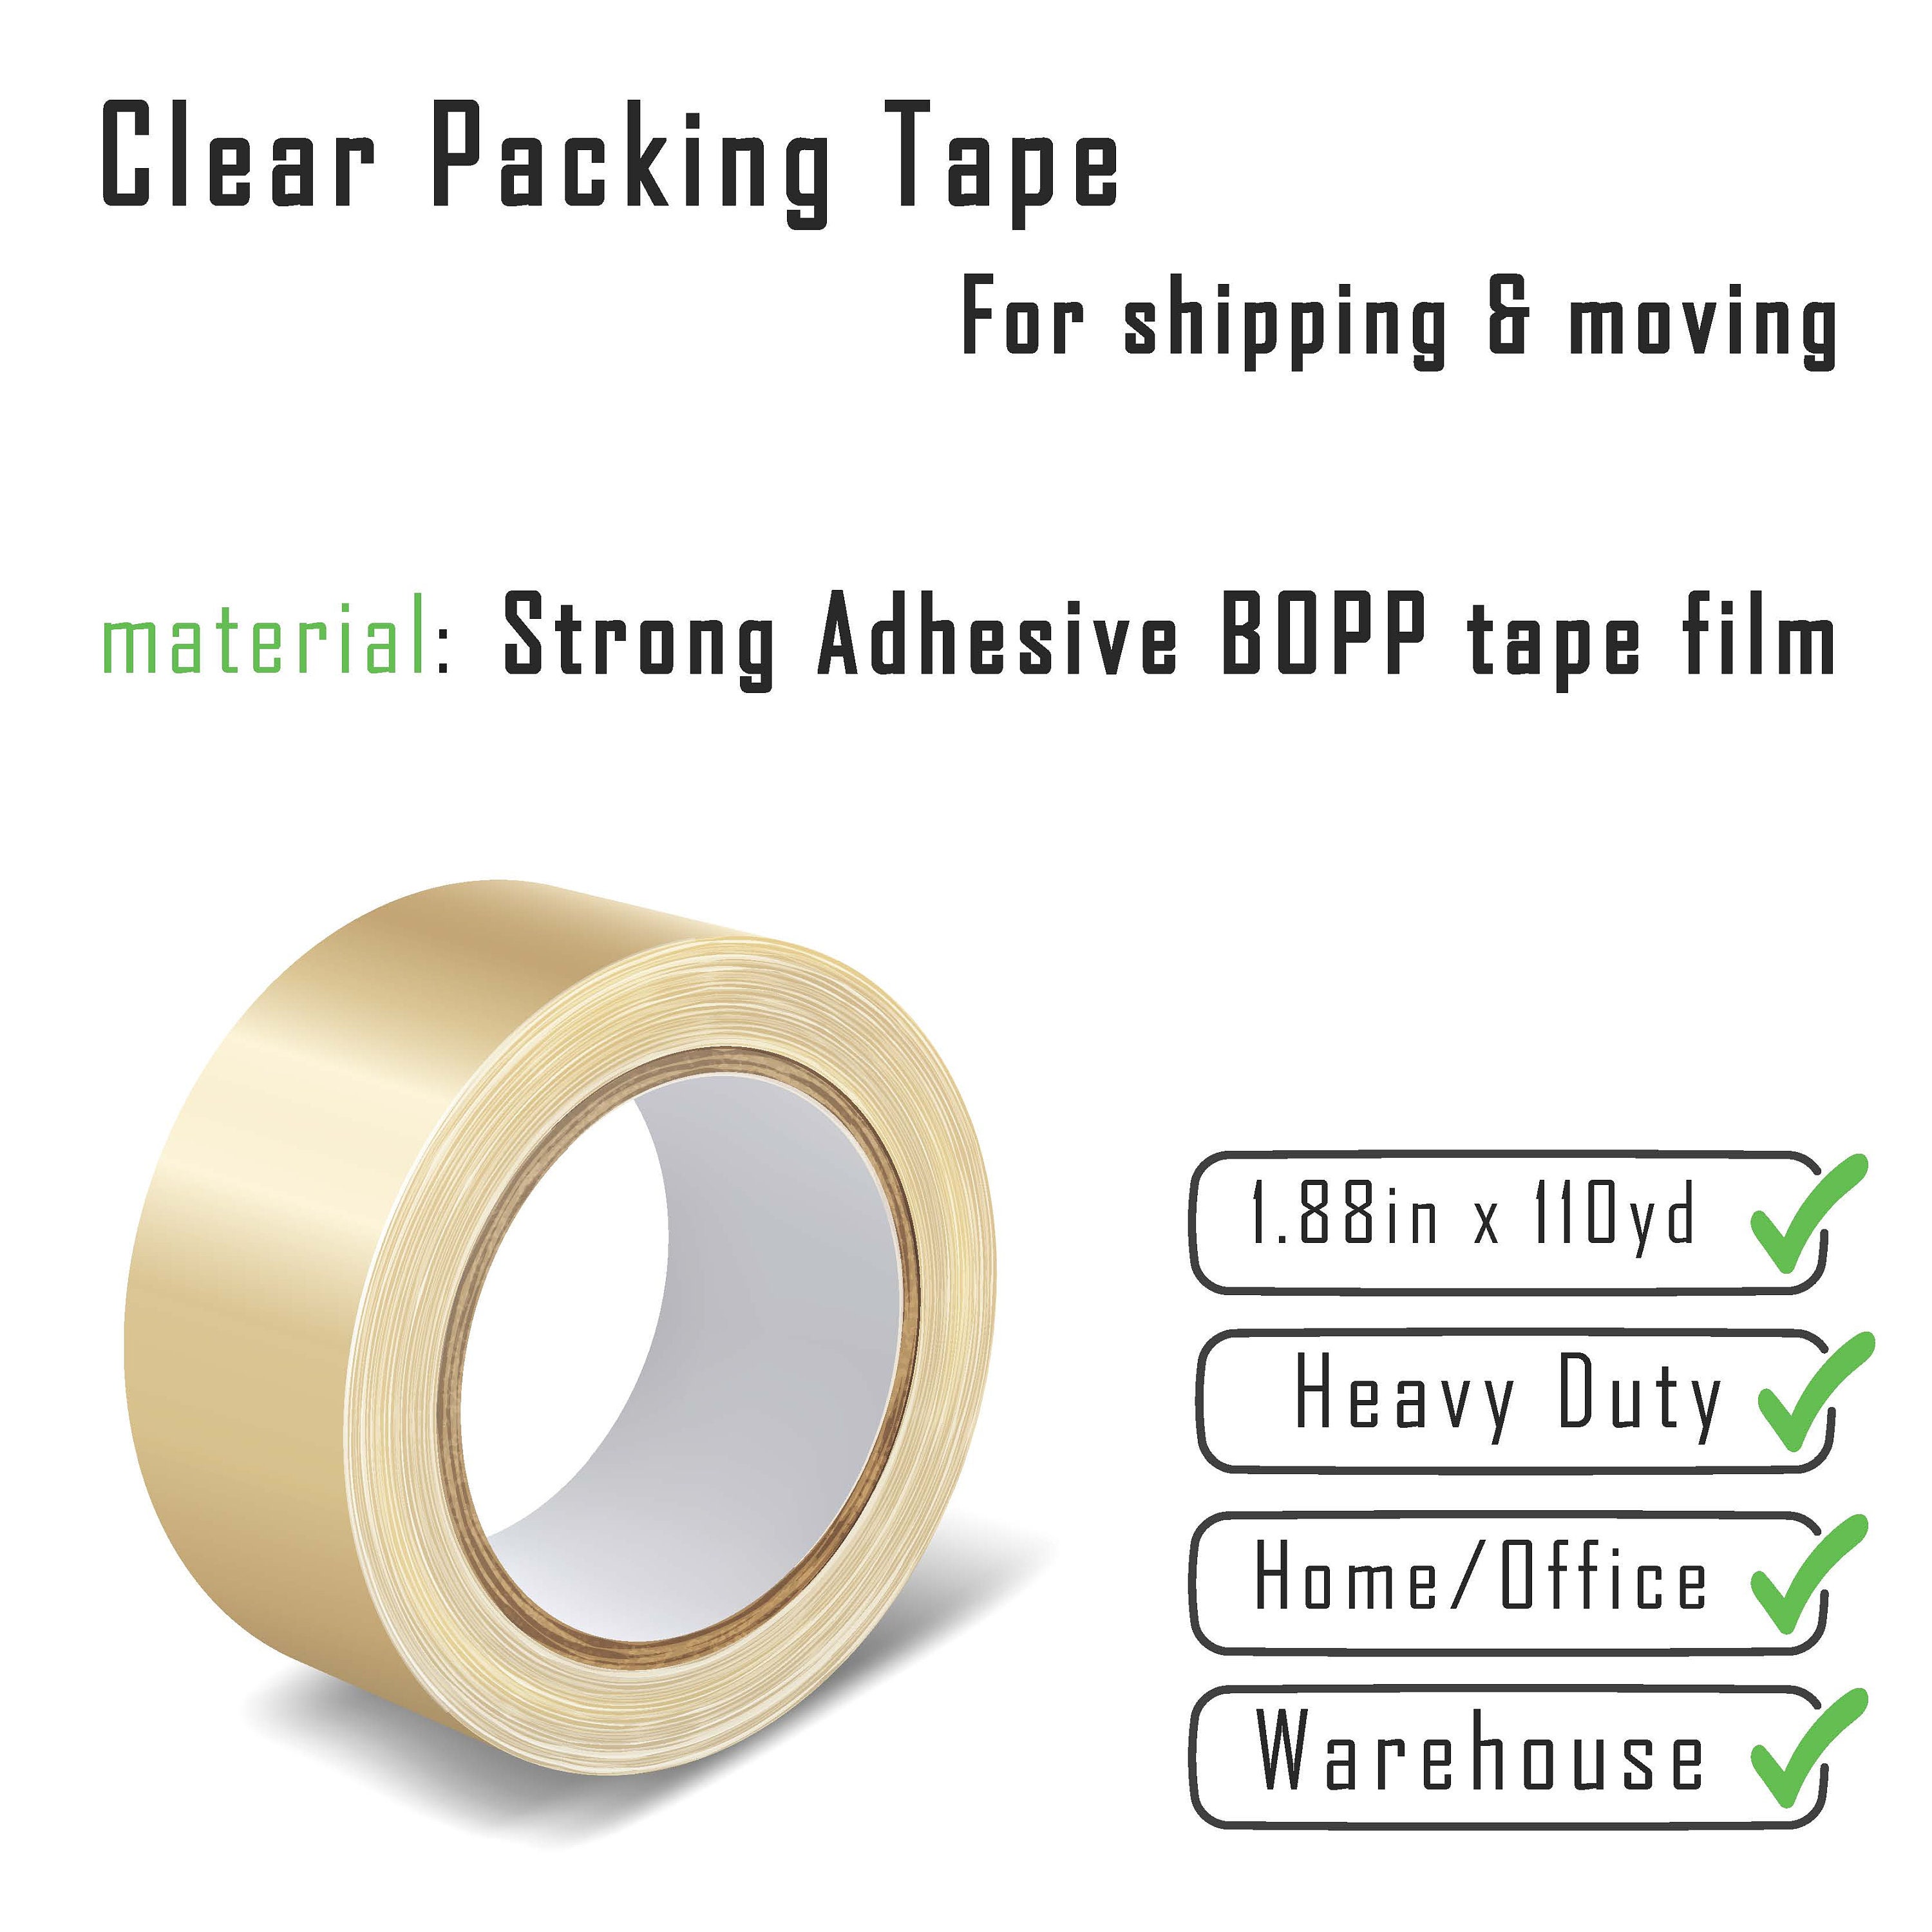 AdTech Tape Glue Runner Refill, Value Pack Of 8